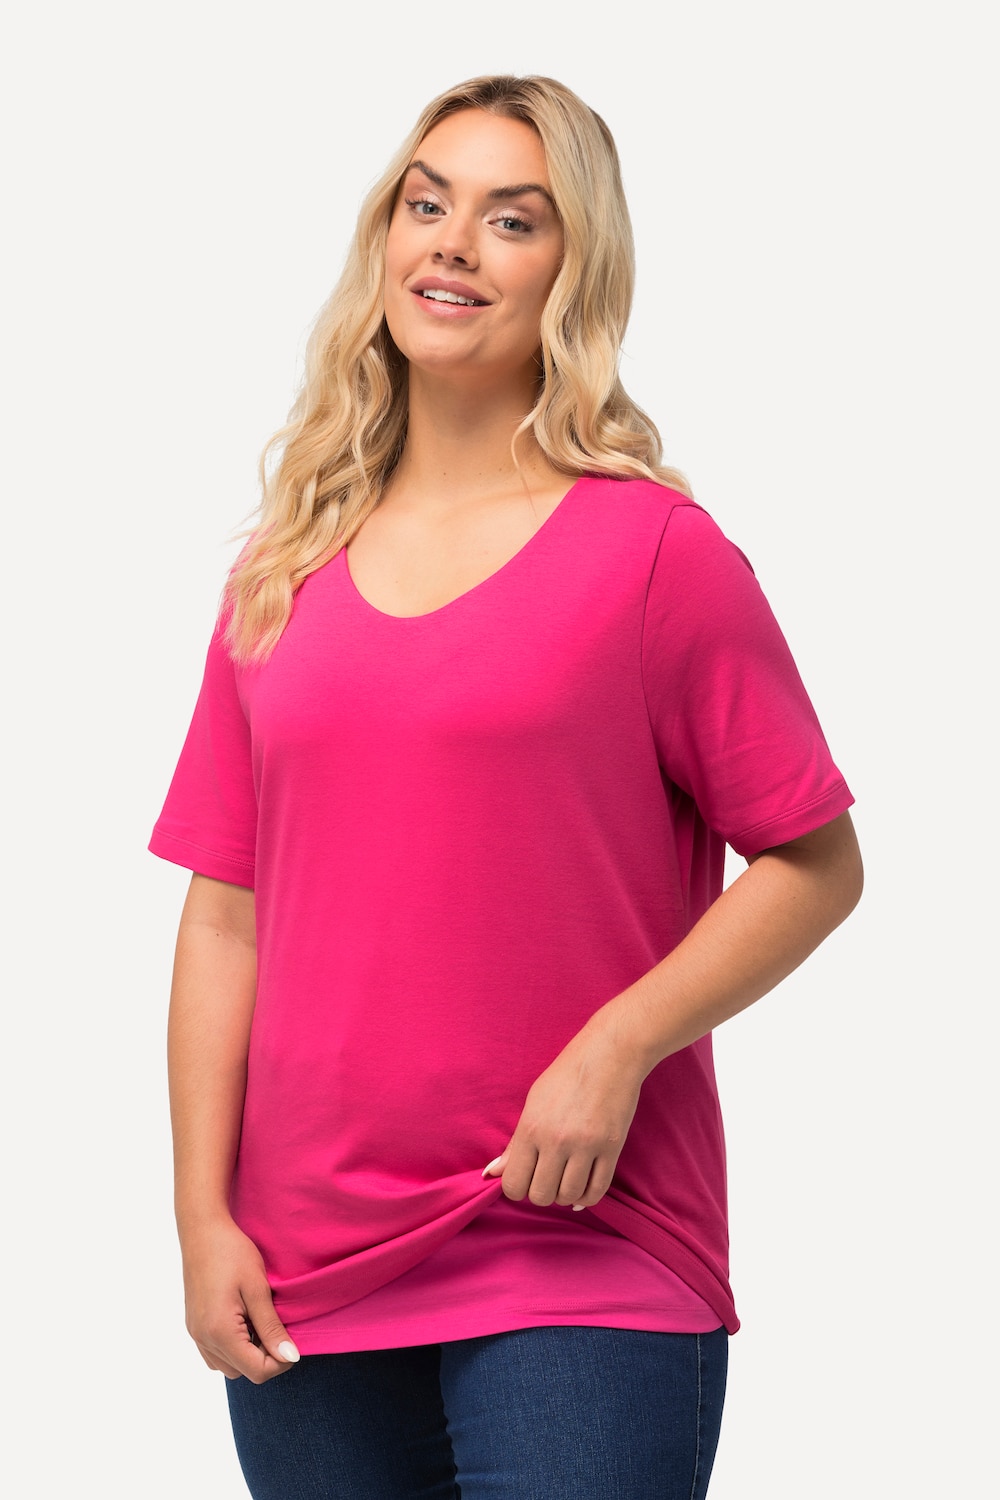 Grote Maten T-shirt, Dames, roze, Maat: 58/60, Katoen, Ulla Popken